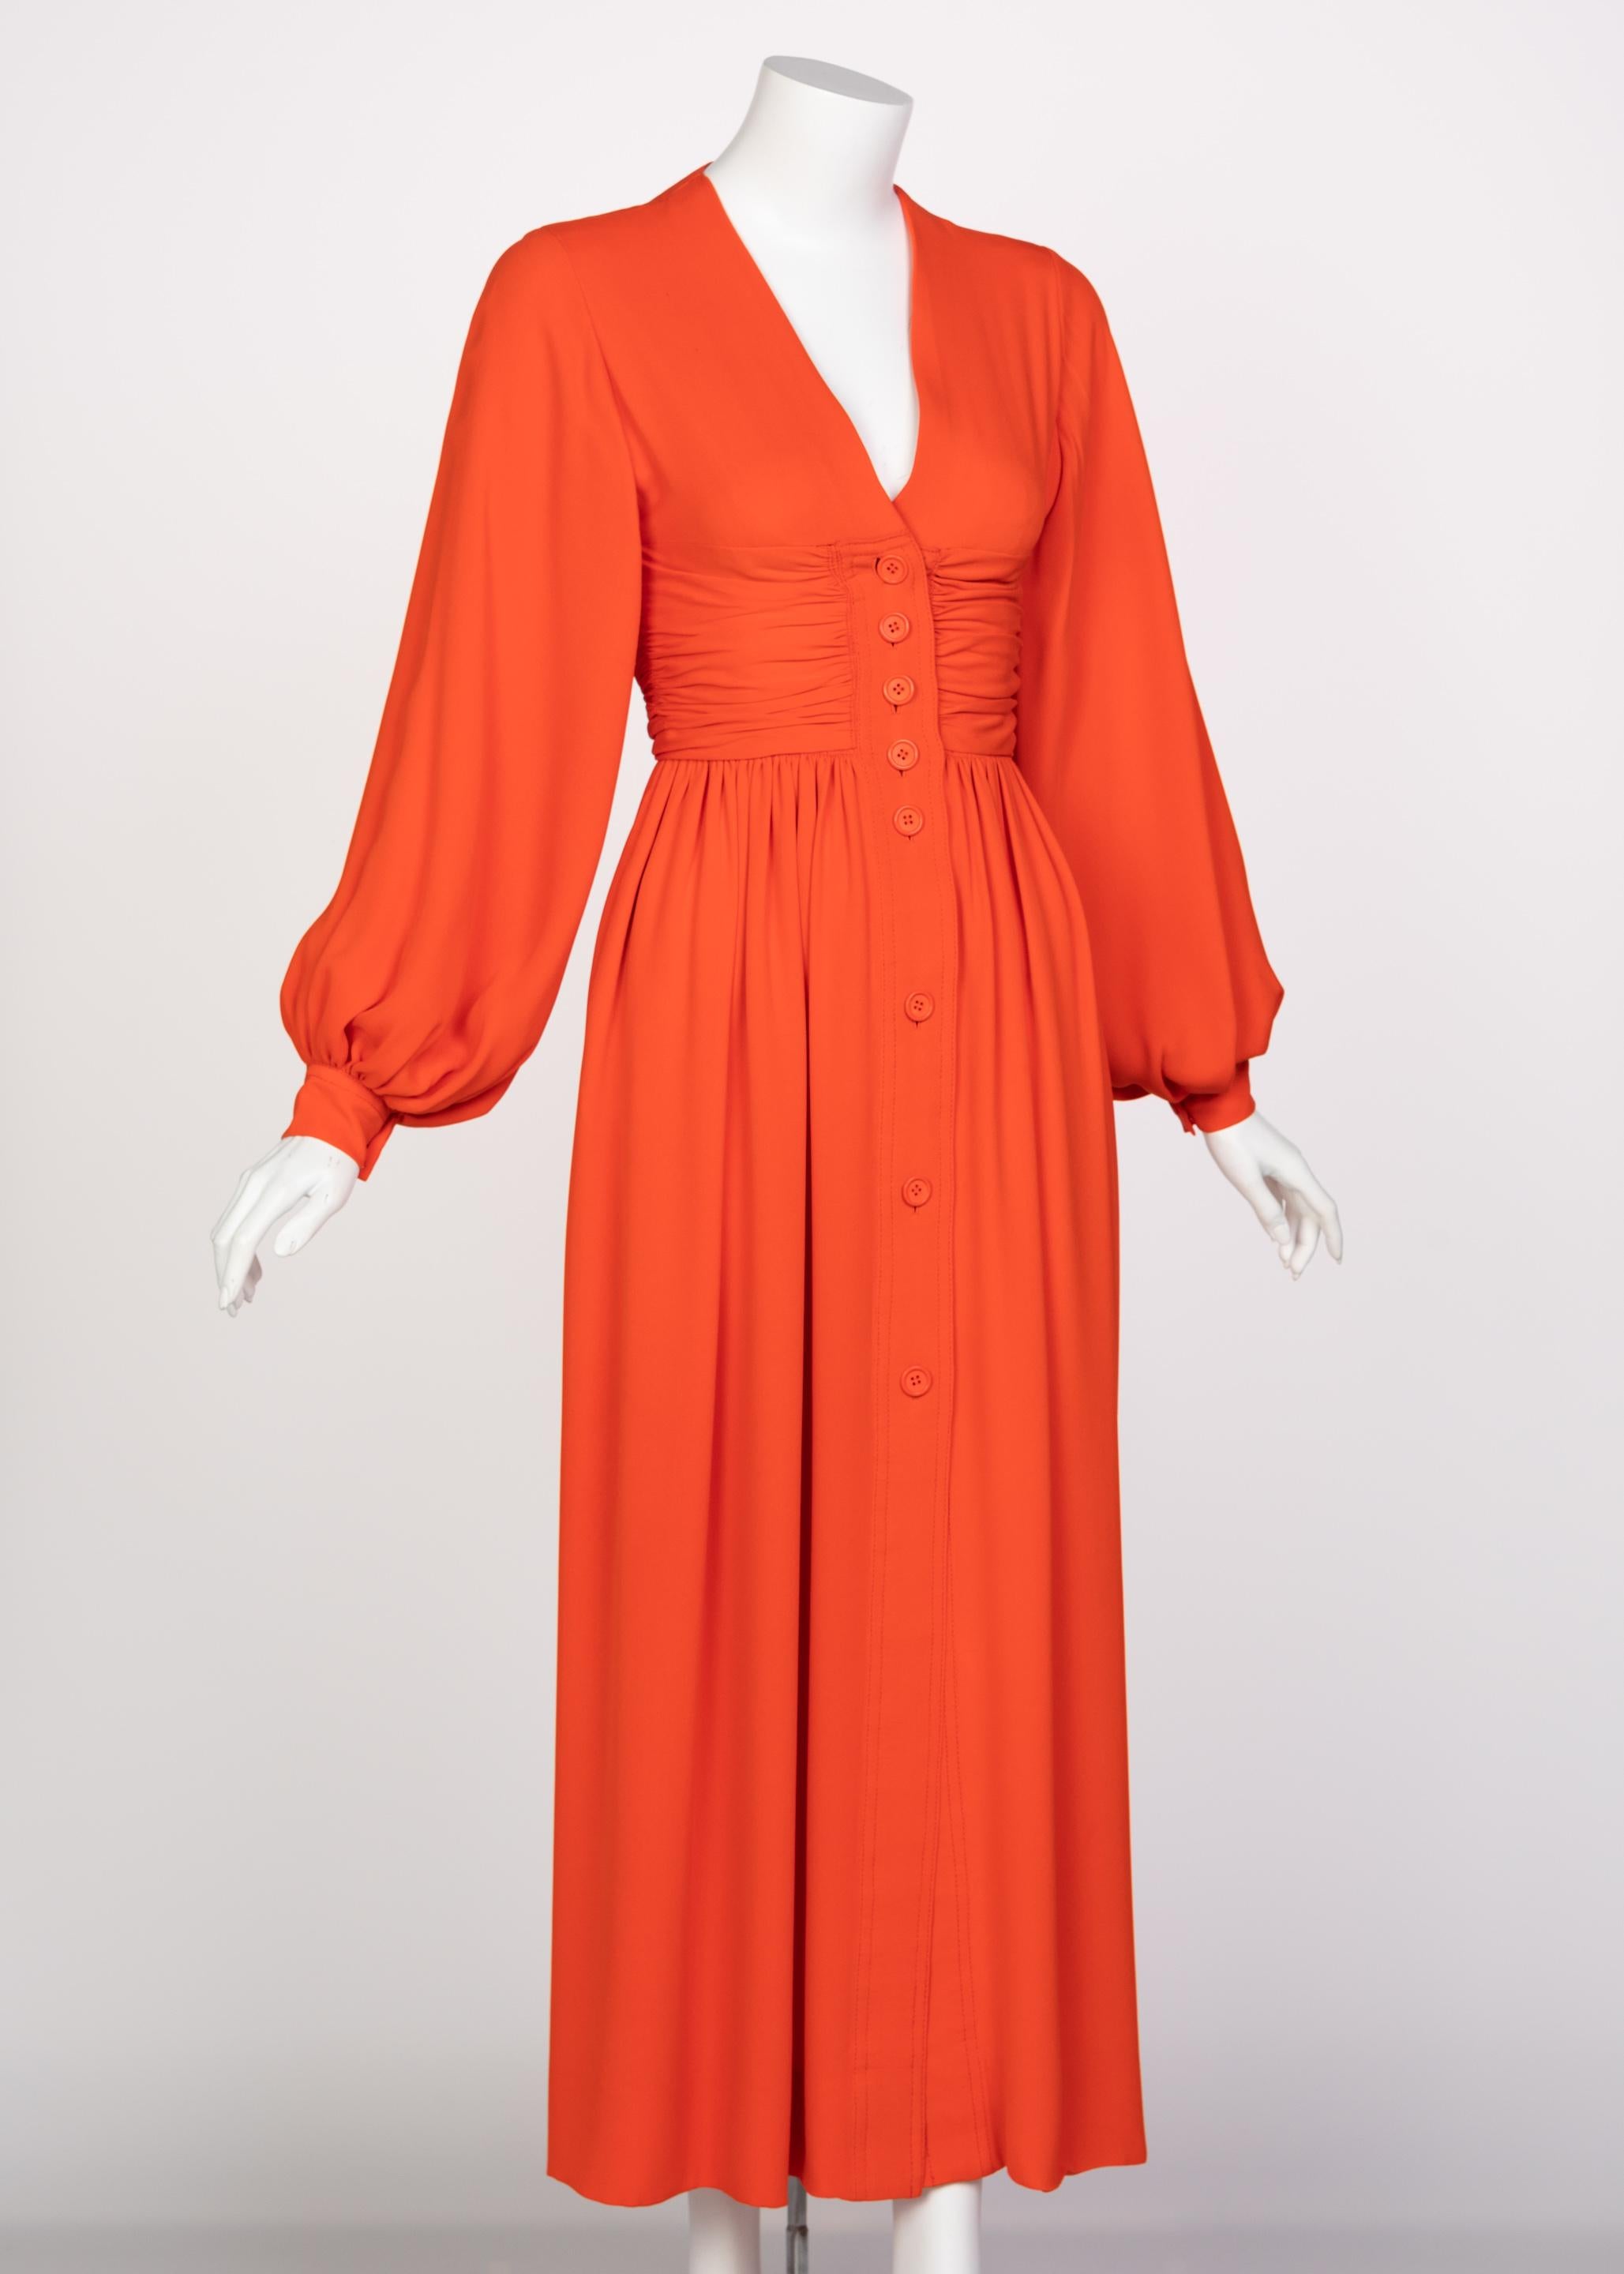 Red Galanos Orange Silk Plunge Neck Bishop Sleeve Dress, 1970s